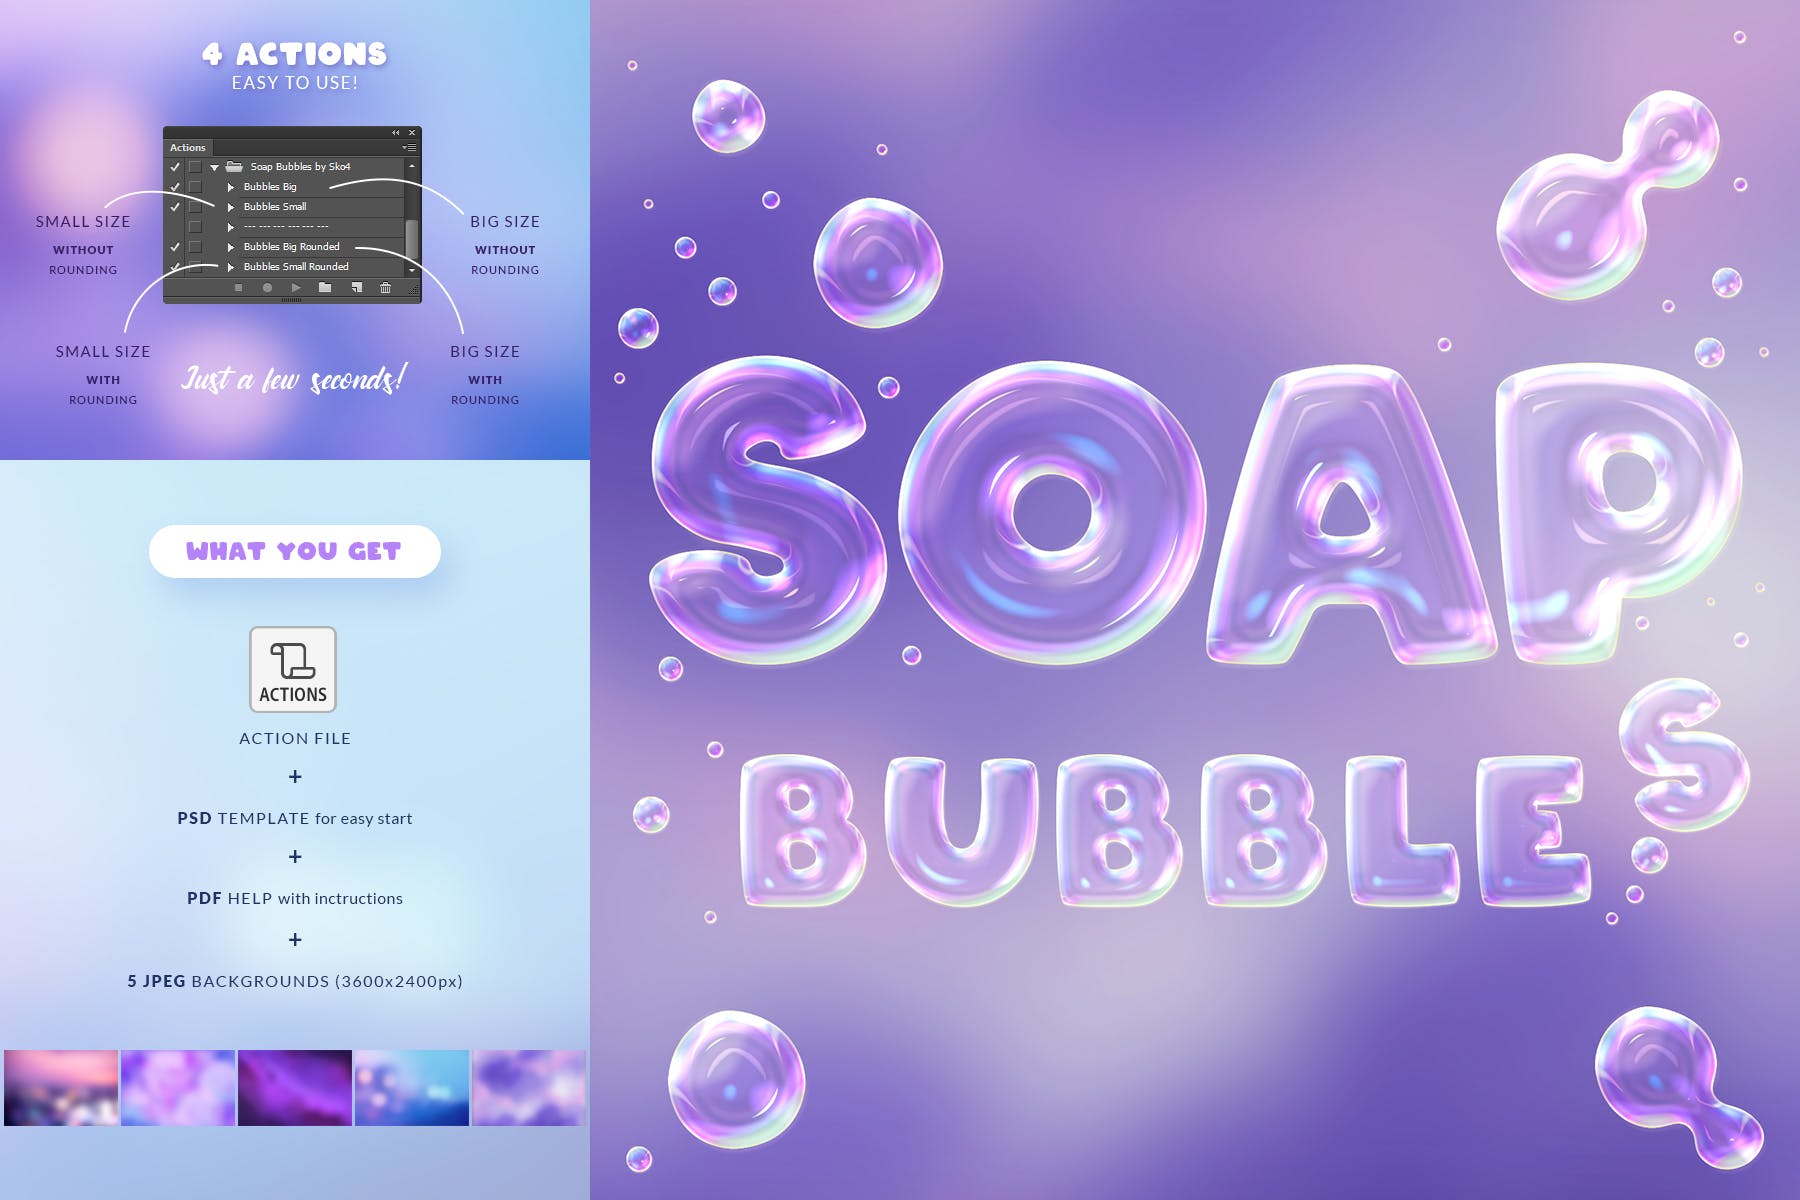 肥皂泡文字特效蚂蚁素材精选PS动作 Soap Bubbles Photoshop Action插图(2)